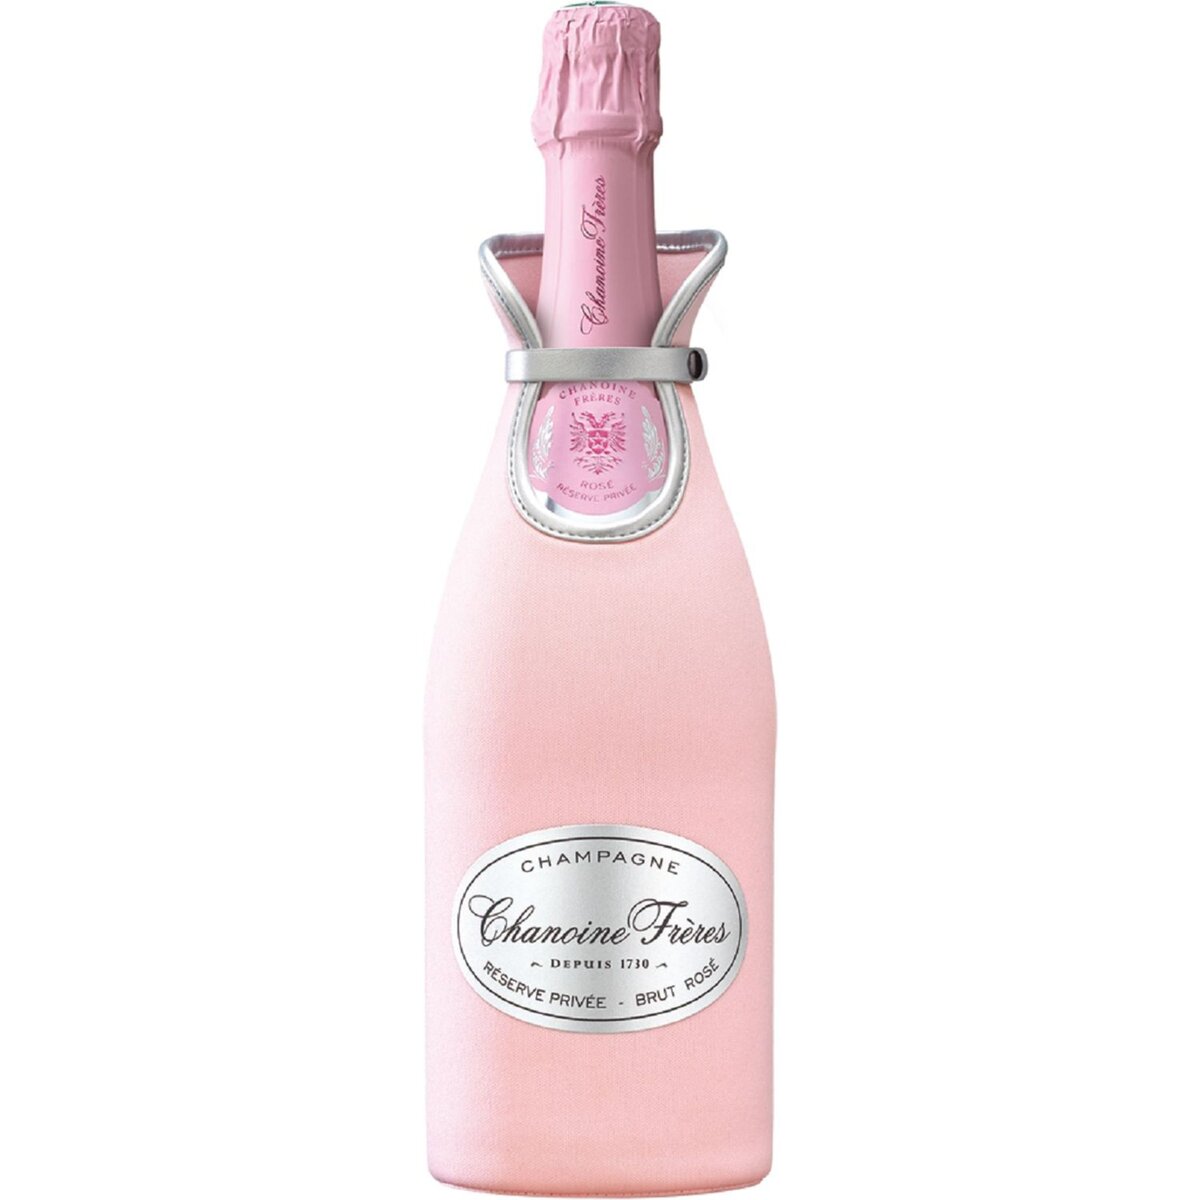 CHANOINE Chanoine Champagne rose réserve privée 12° -75cl pochon